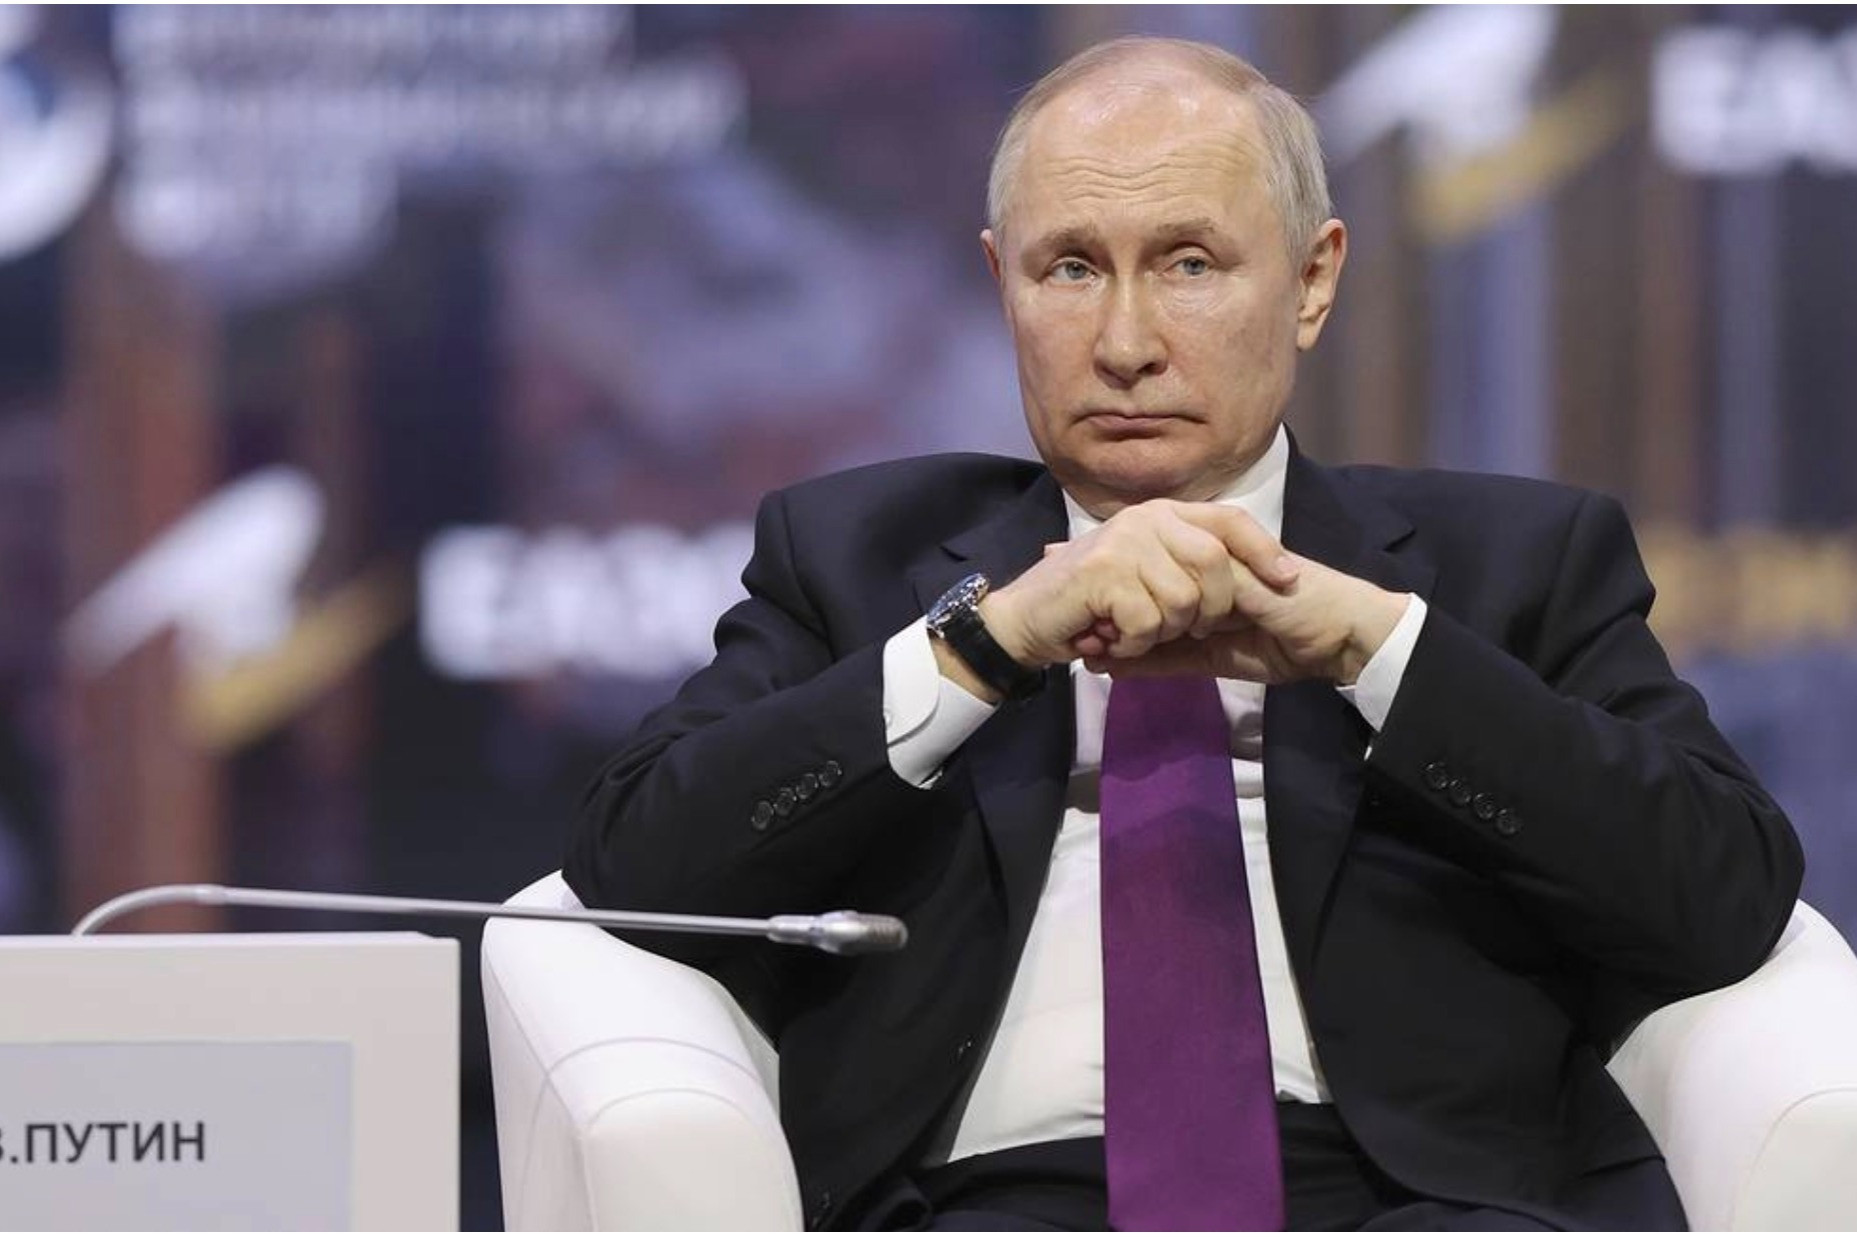 Mức độ tin tưởng của dân Nga với Tổng thống Putin tăng lên 80%